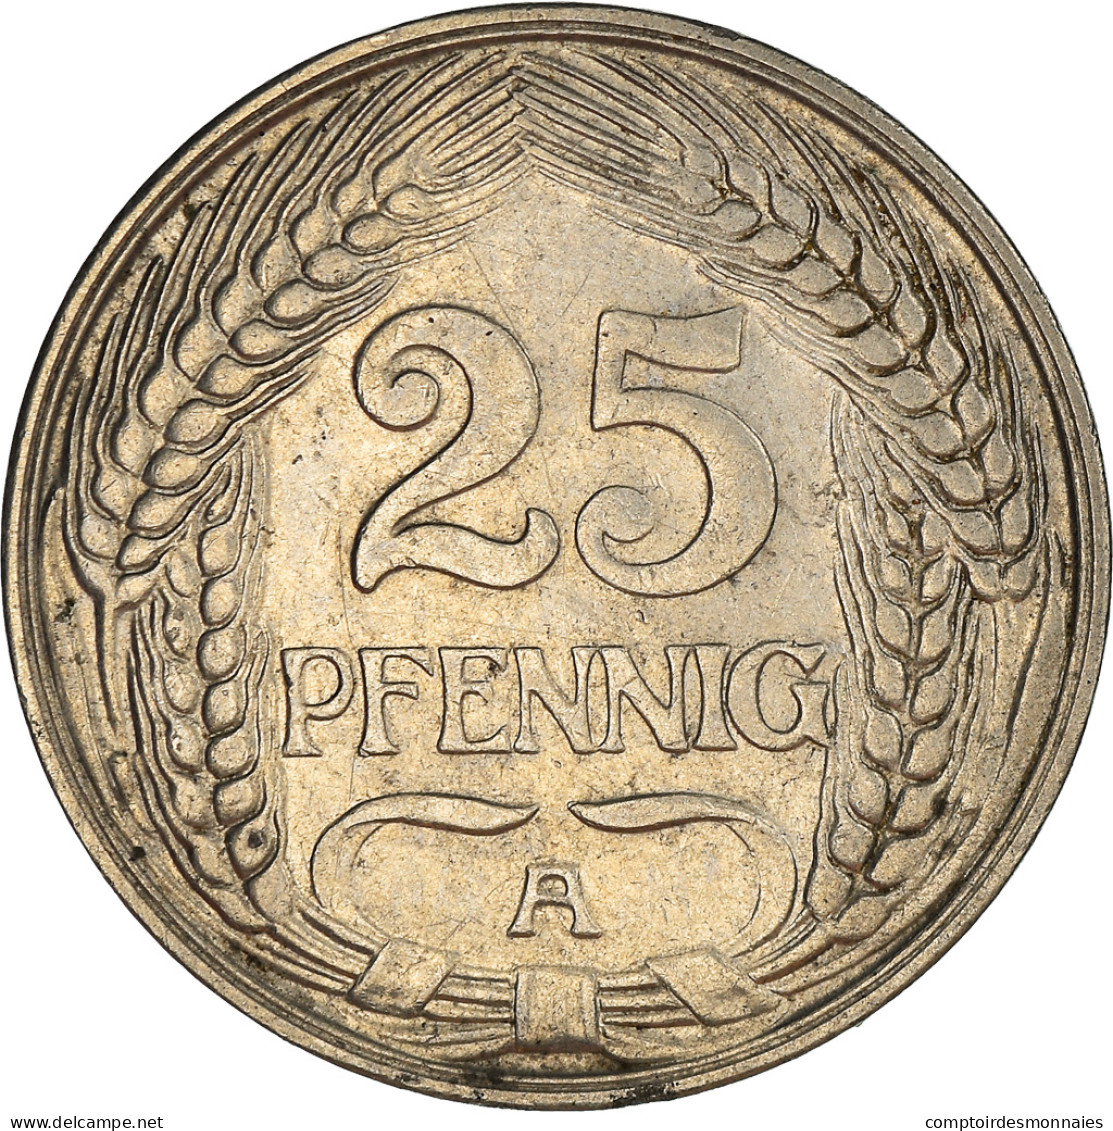 Monnaie, GERMANY - EMPIRE, Wilhelm II, 25 Pfennig, 1910, Berlin, TTB, Nickel - 25 Pfennig